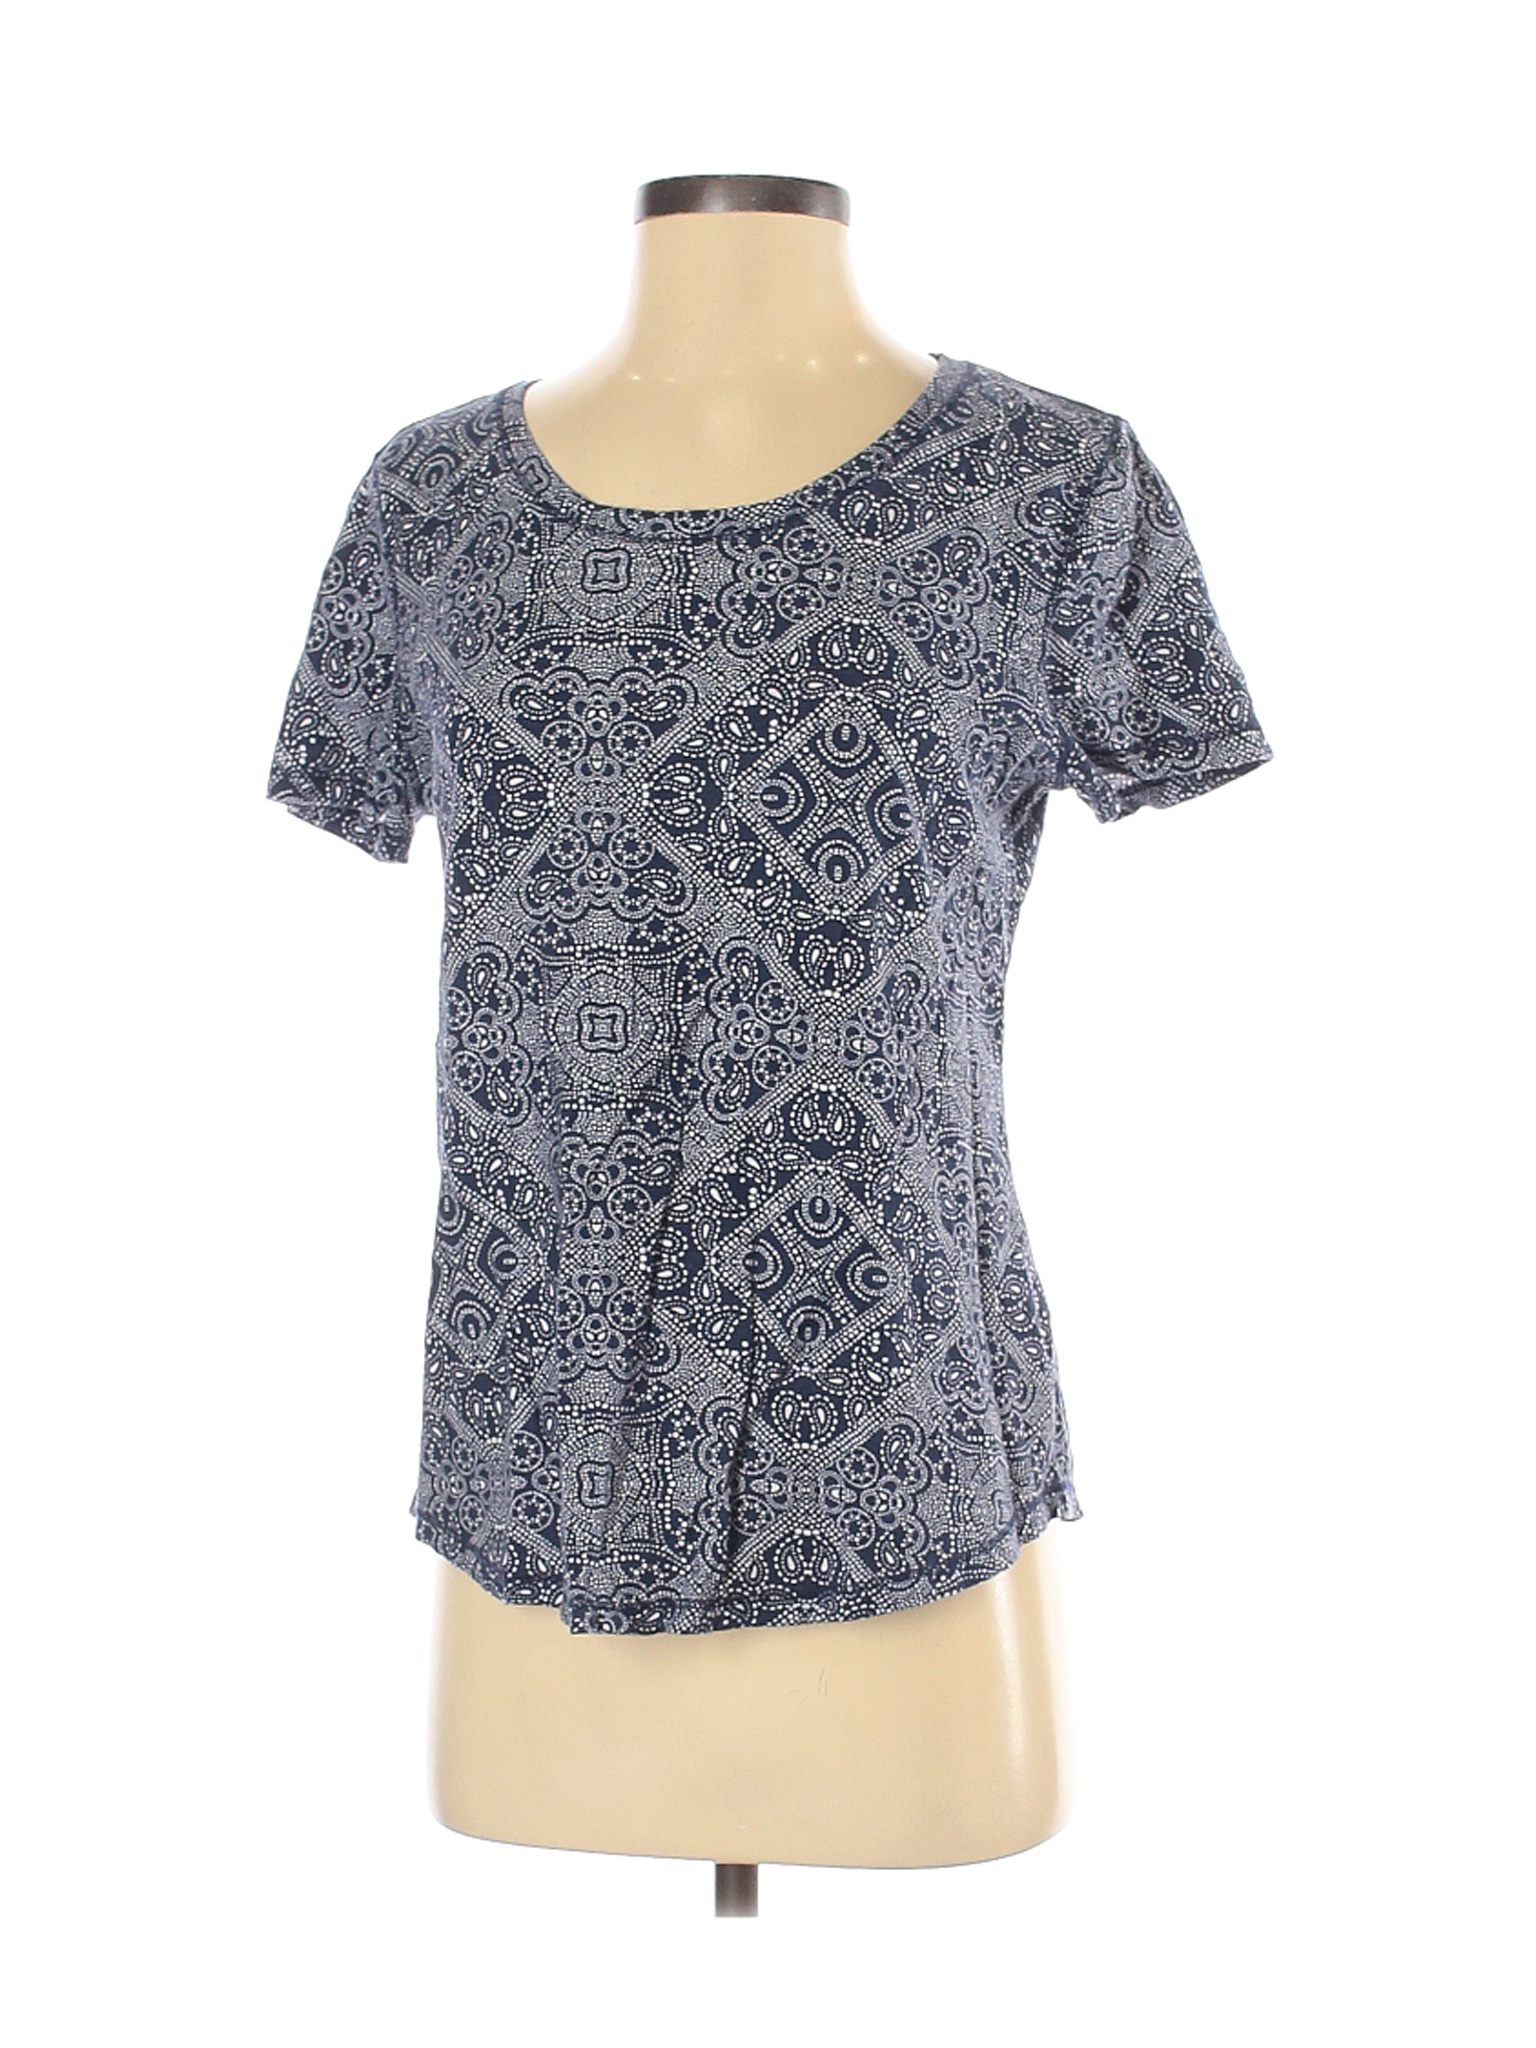 Ruff Hewn Women Blue Short Sleeve T-Shirt S | eBay